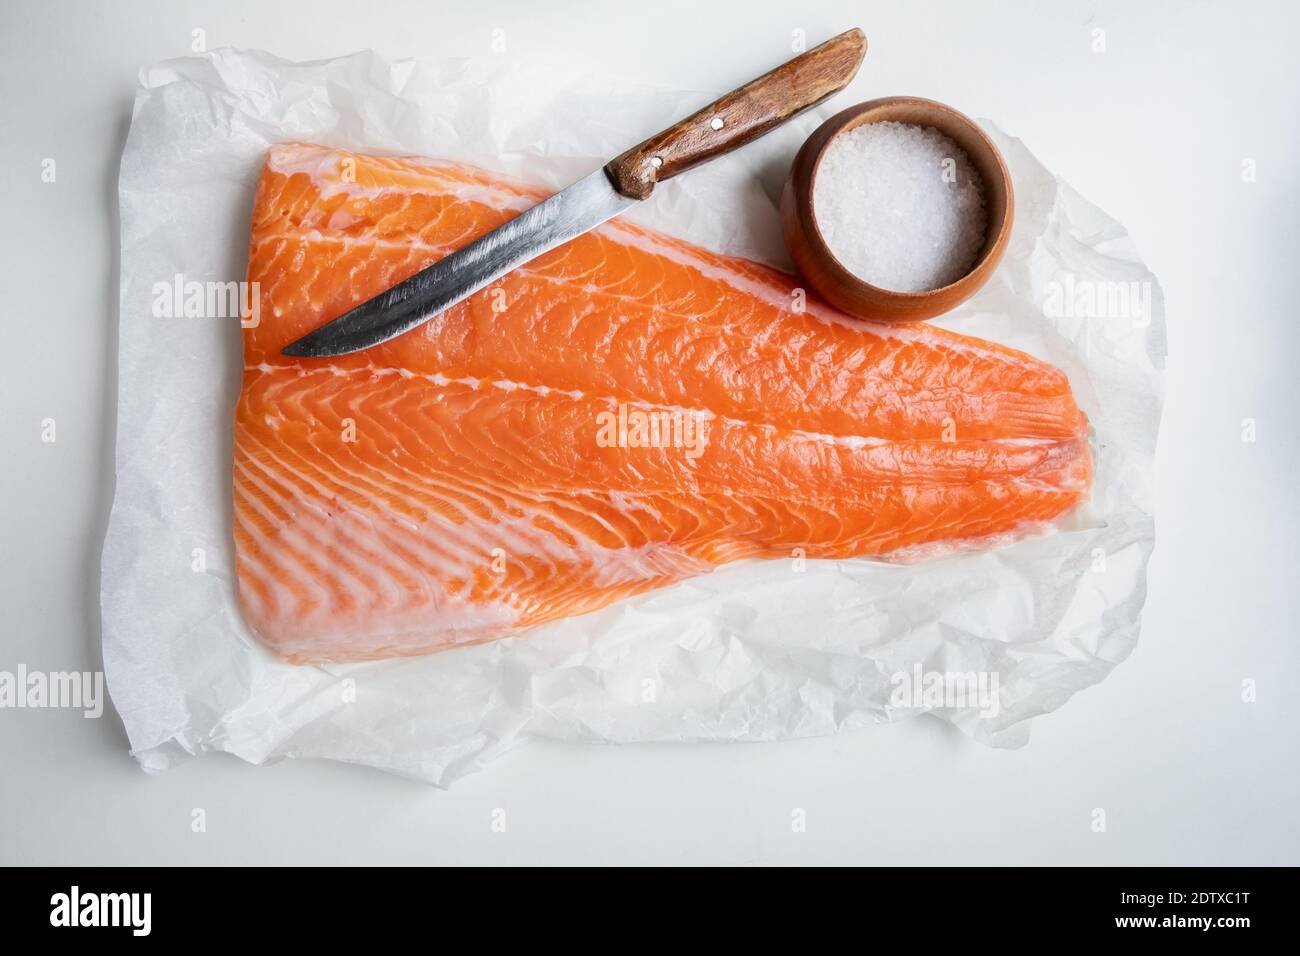 Lachsfischfilet auf Holztisch mit Messer und Salz. Food-Fotografie Stockfoto